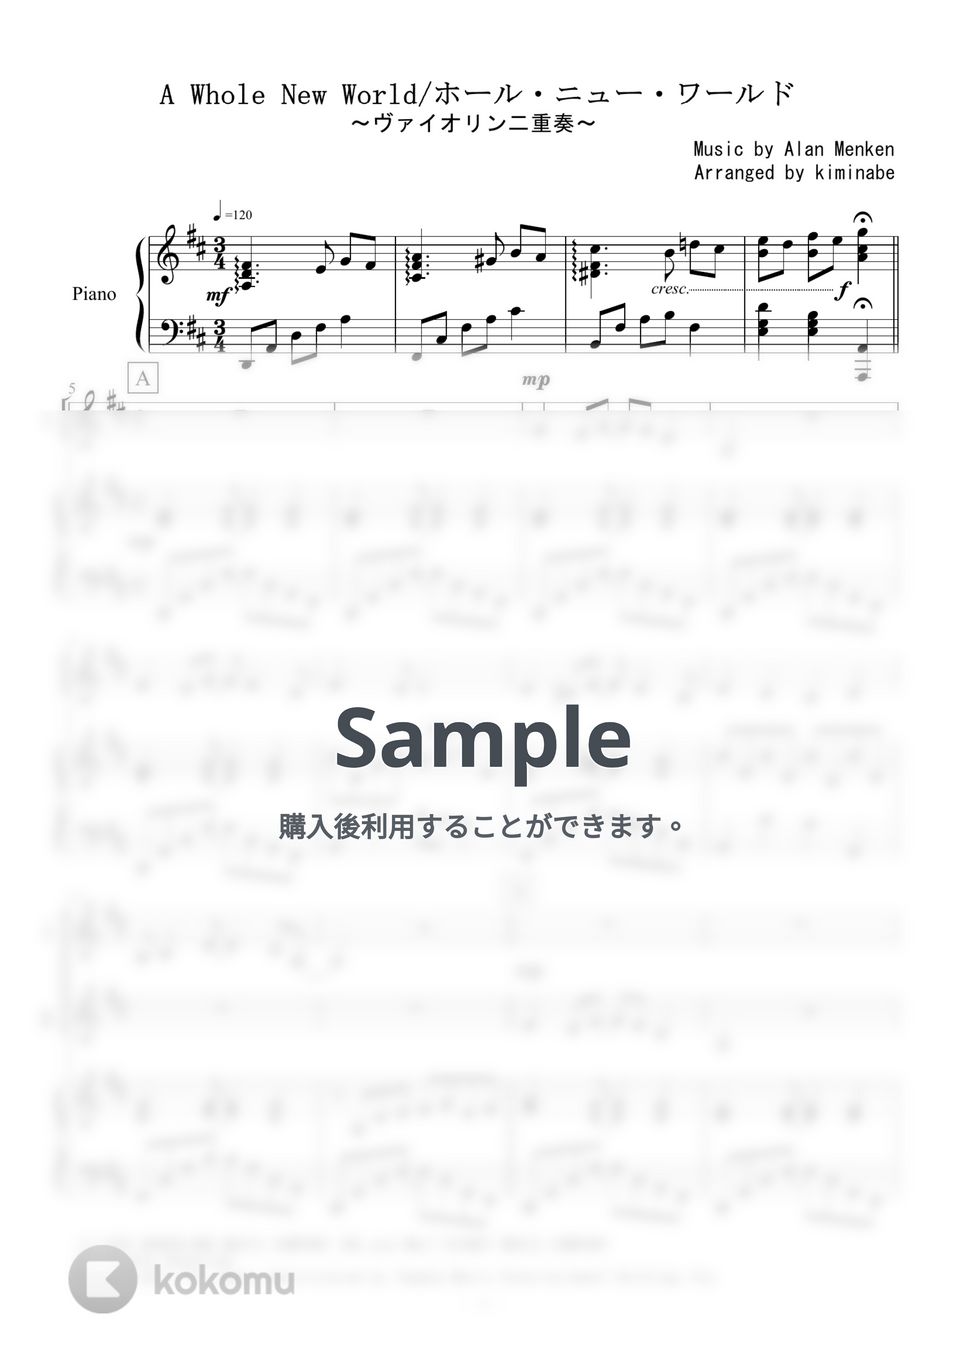 アラジン - ホール・ニュー・ワールド (ヴァイオリン二重奏) by kiminabe